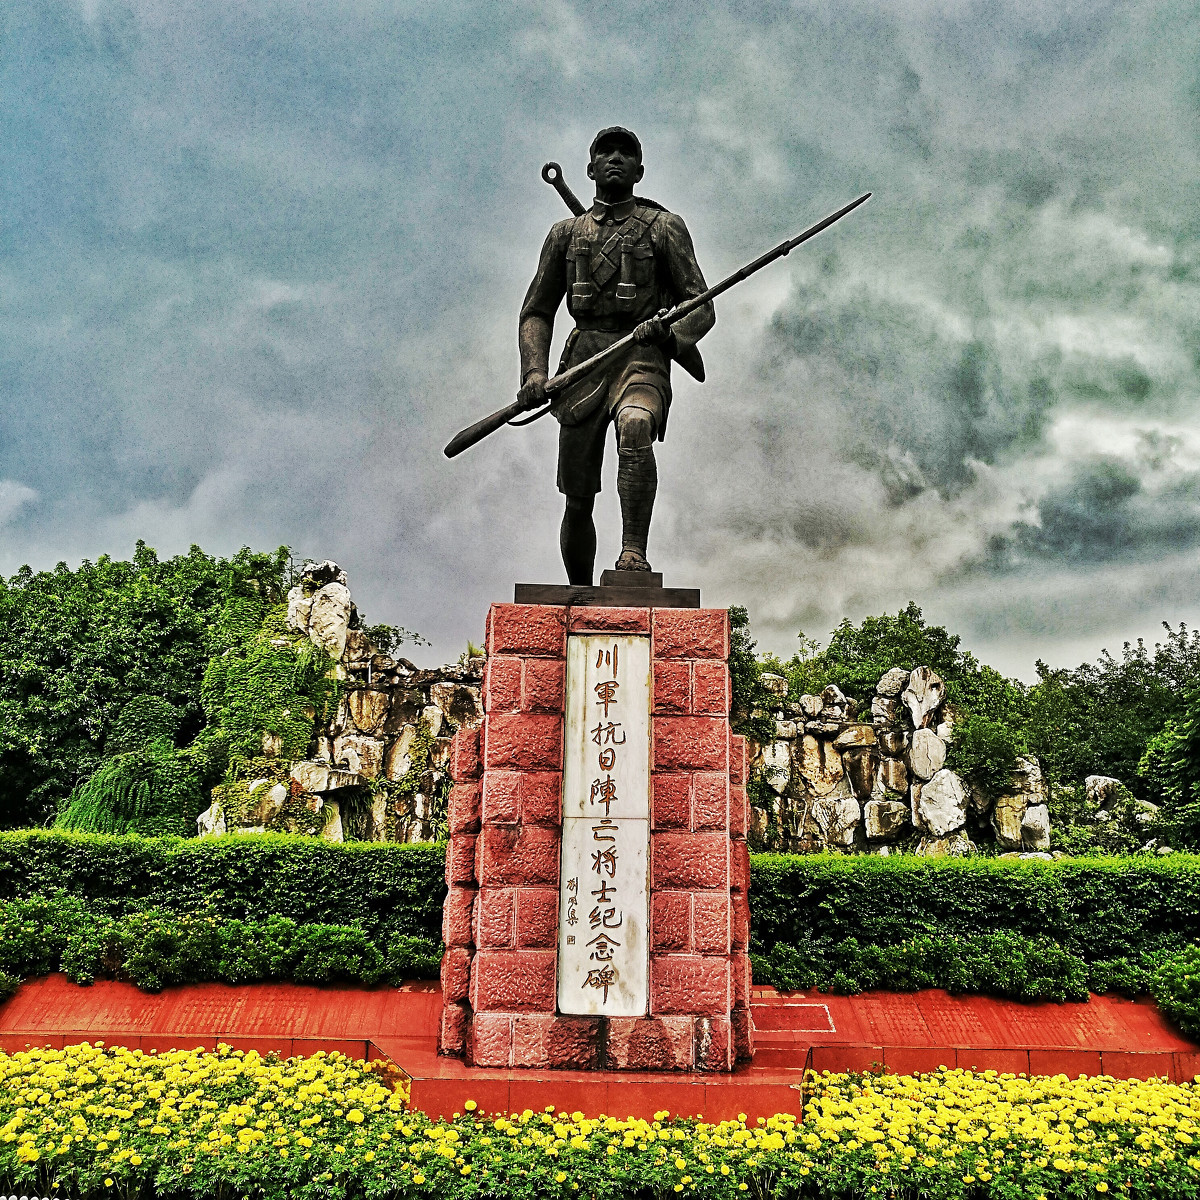 为纪念川军英魂,著名雕塑大师刘开渠创作了川军抗日阵亡将士纪念碑,又